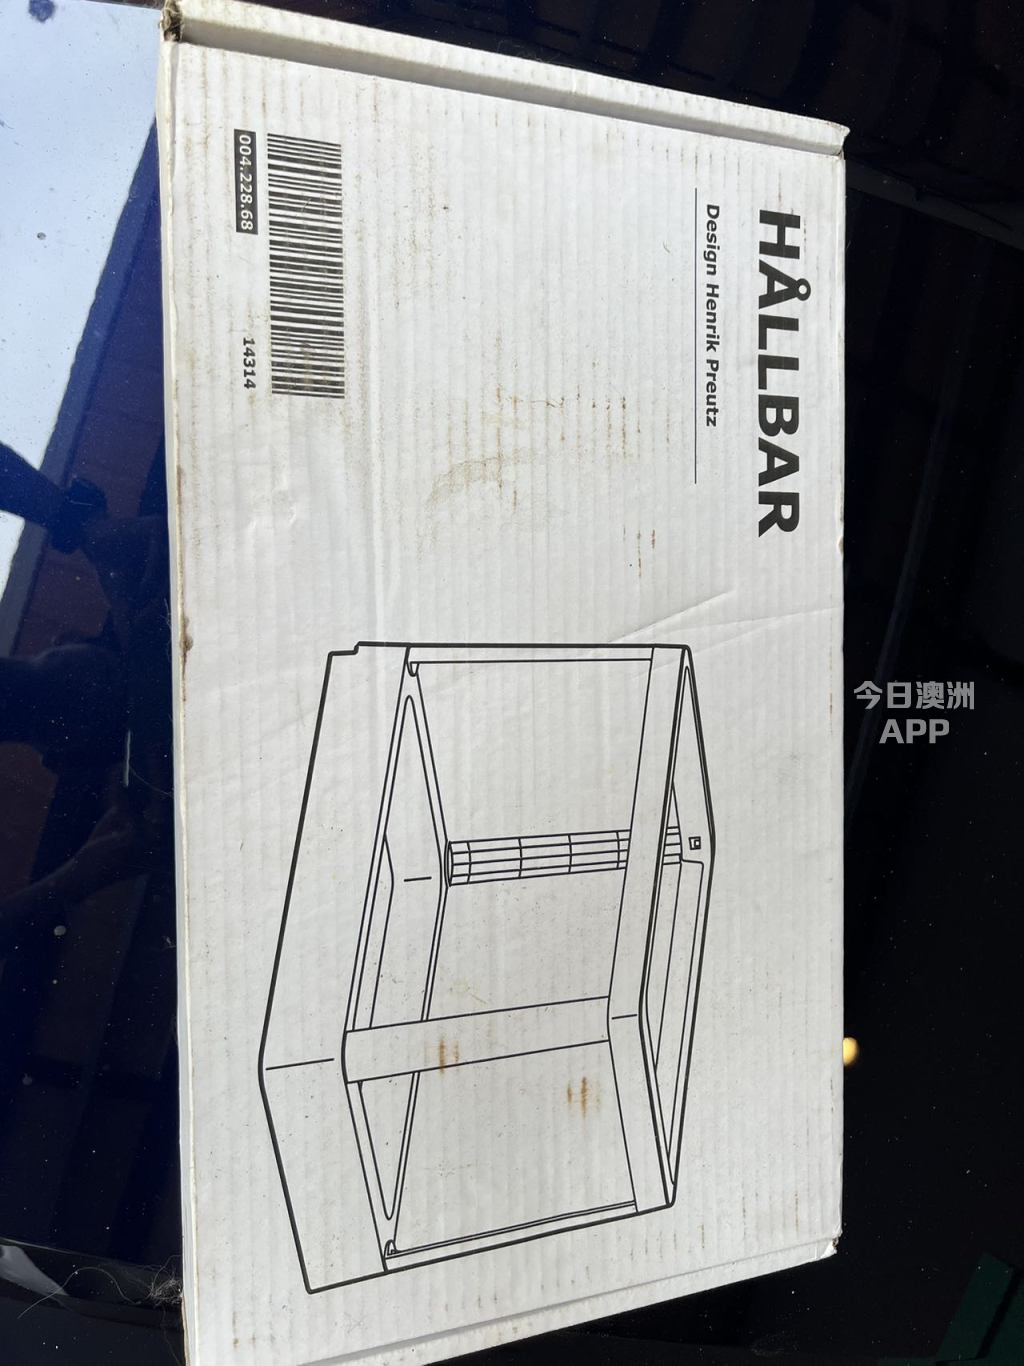 全新二手闲置出售宜家推拉垃圾箱架子没拆封低价出售 Pull out frame Ikea